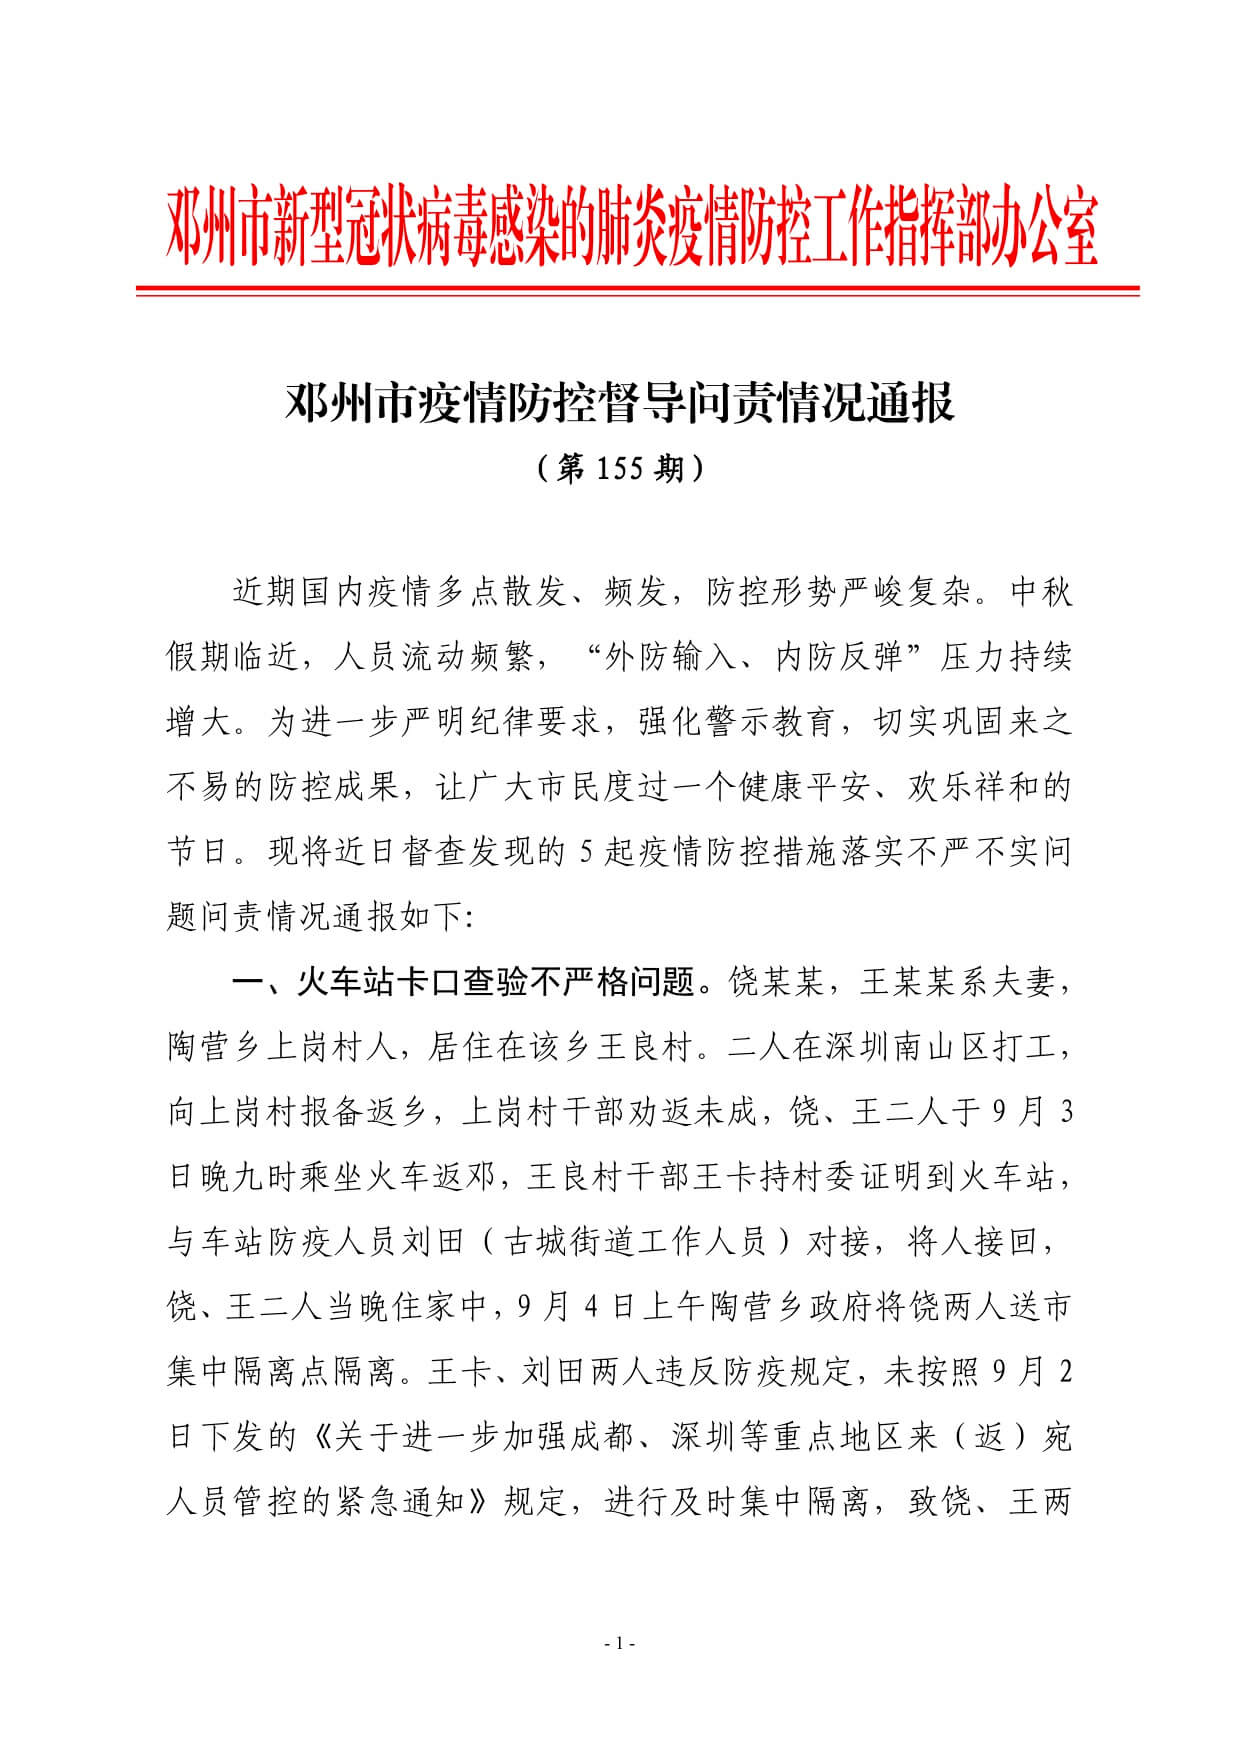 邓州市疫情防控督导问责情况通报 (第 155 期)